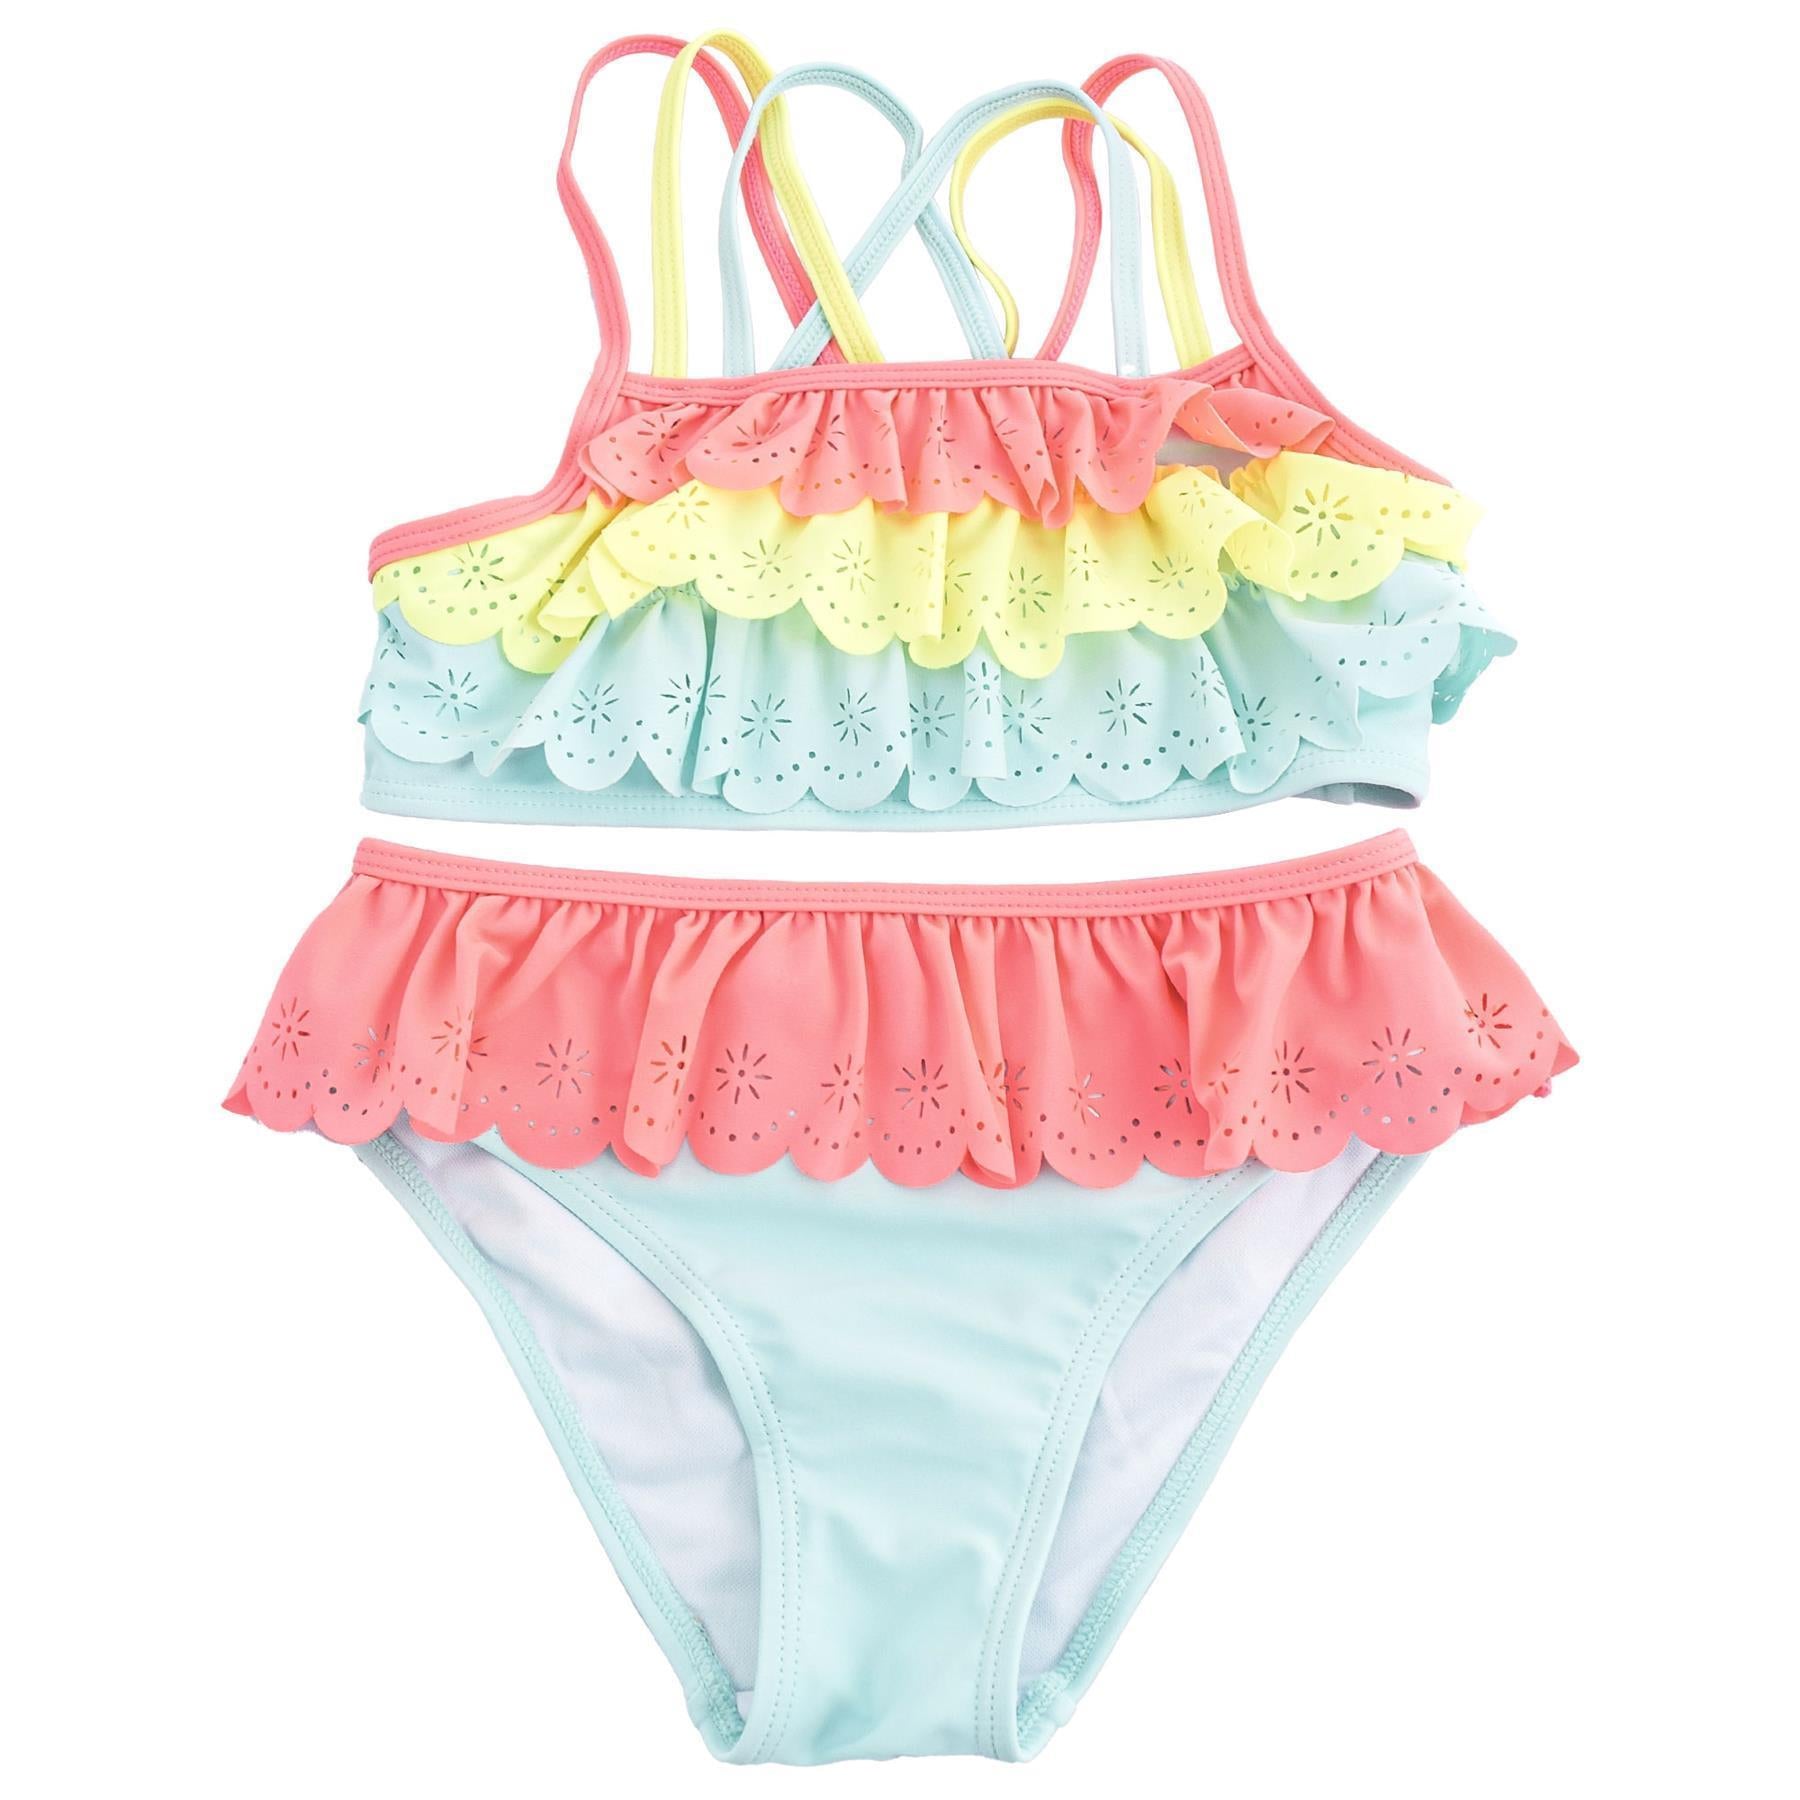 A2Z 4 Kids Girls Bikini 2-Piece Swimsuit Girls Tankini Swim Set Beach Swimwear